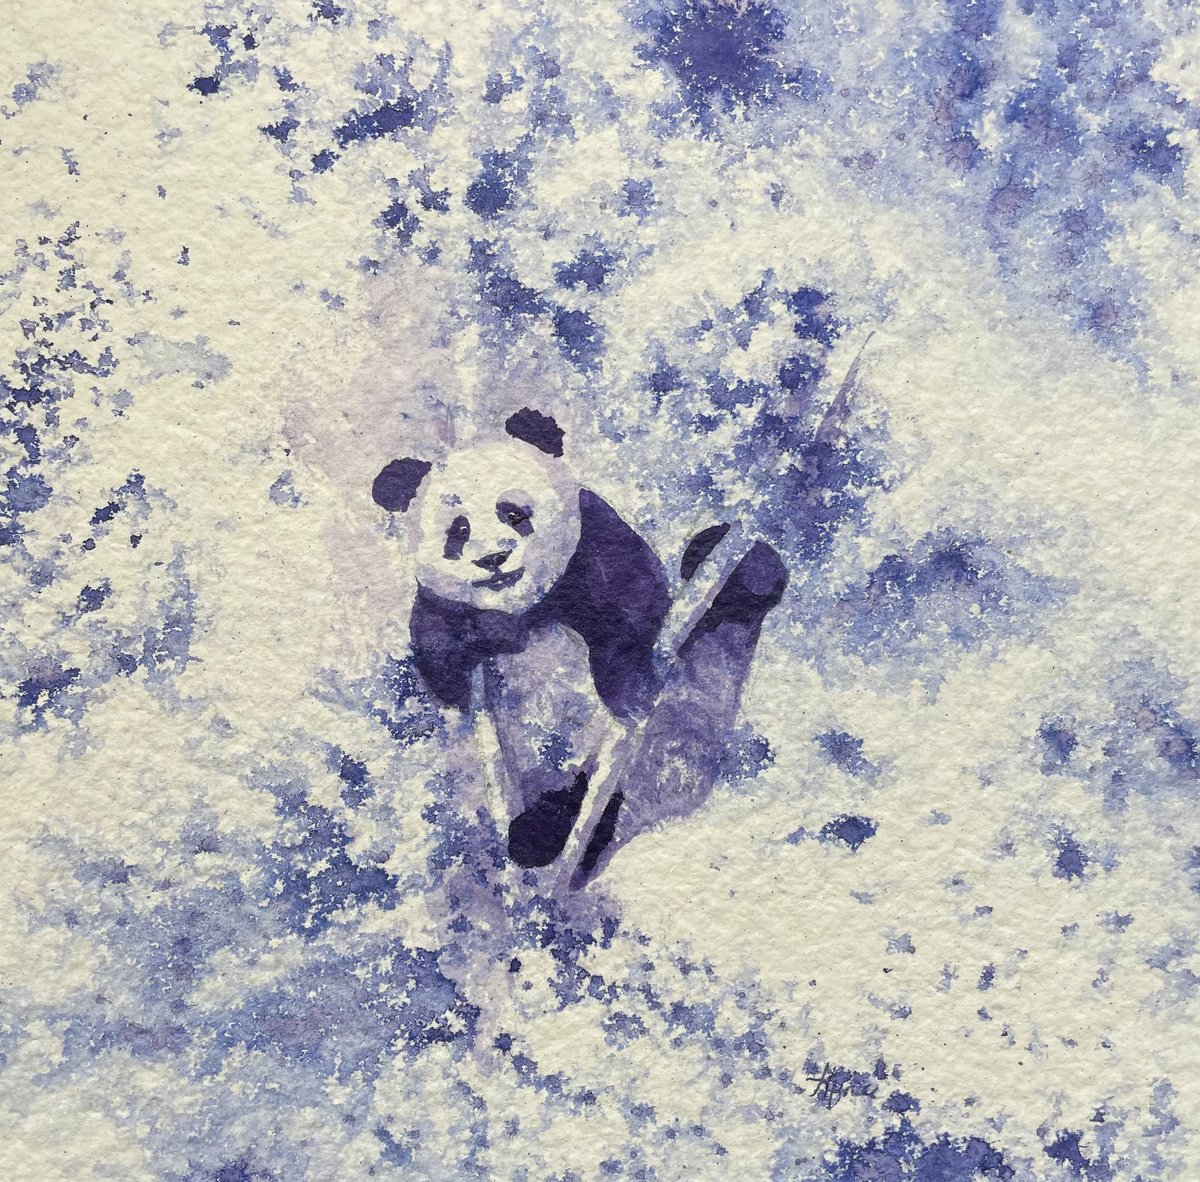 Panda Perch 3 by Hannah Bruce